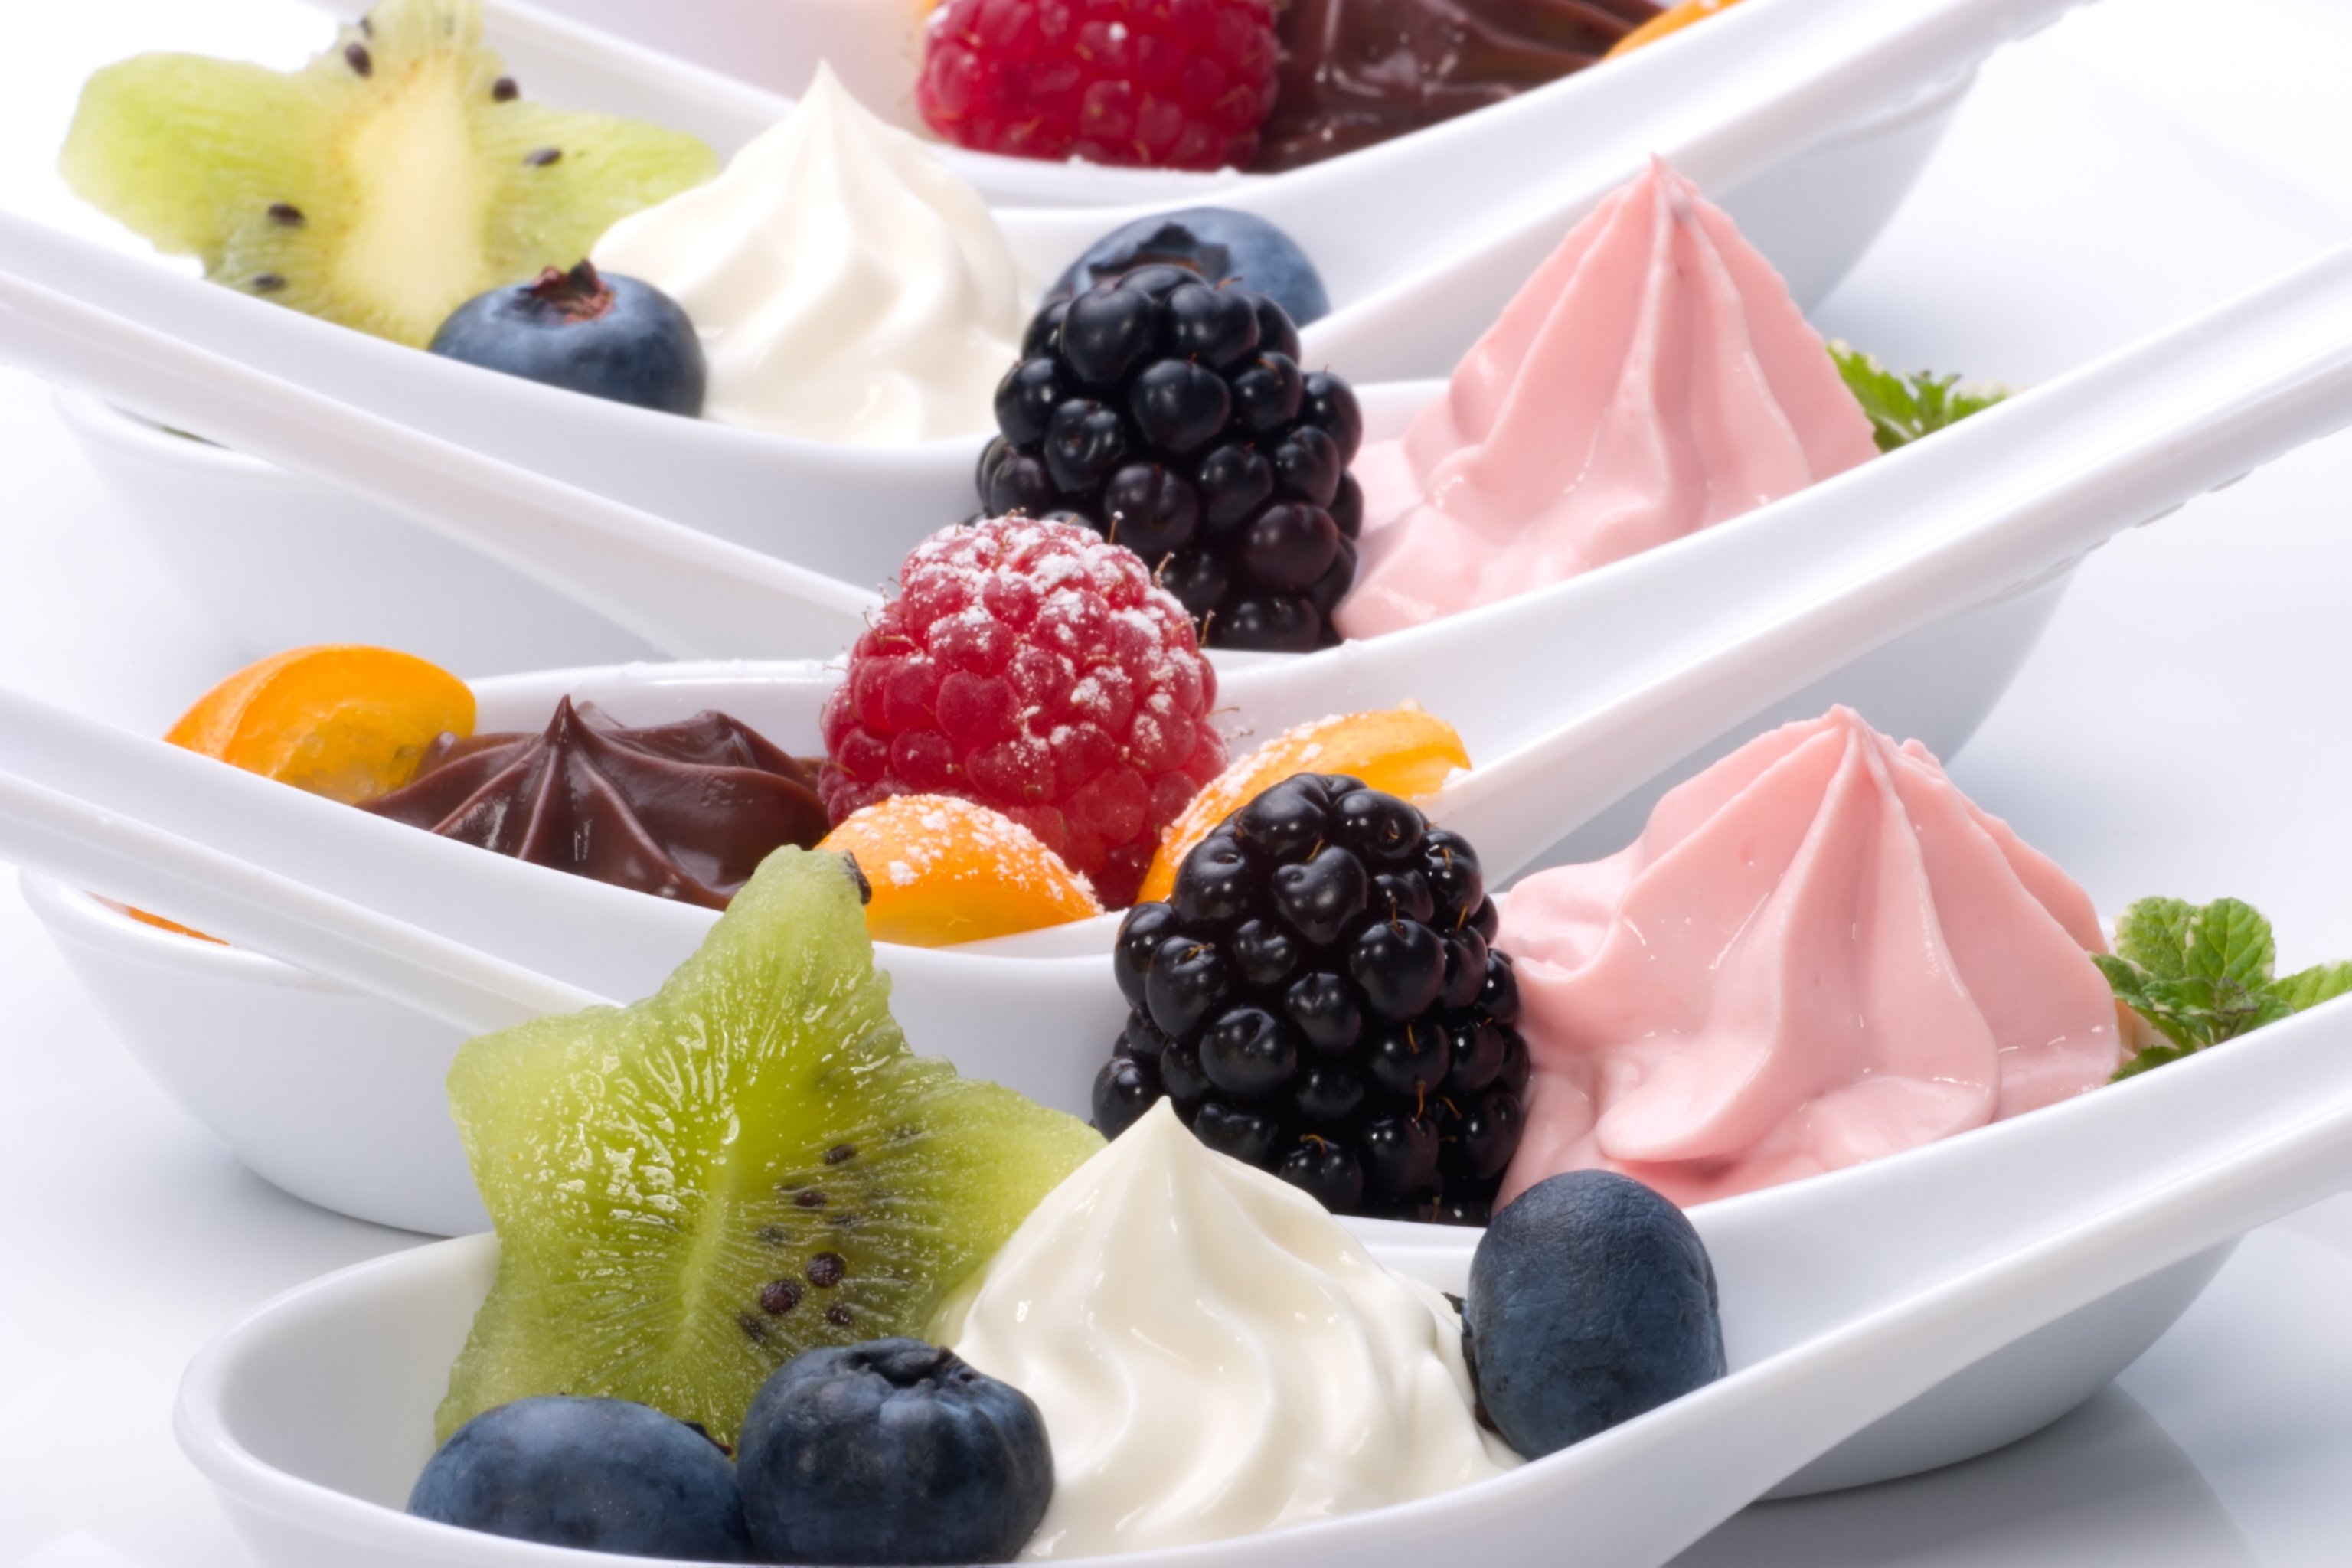 Restaurantes: Frozen yogurt, refresca o verão sem engordar